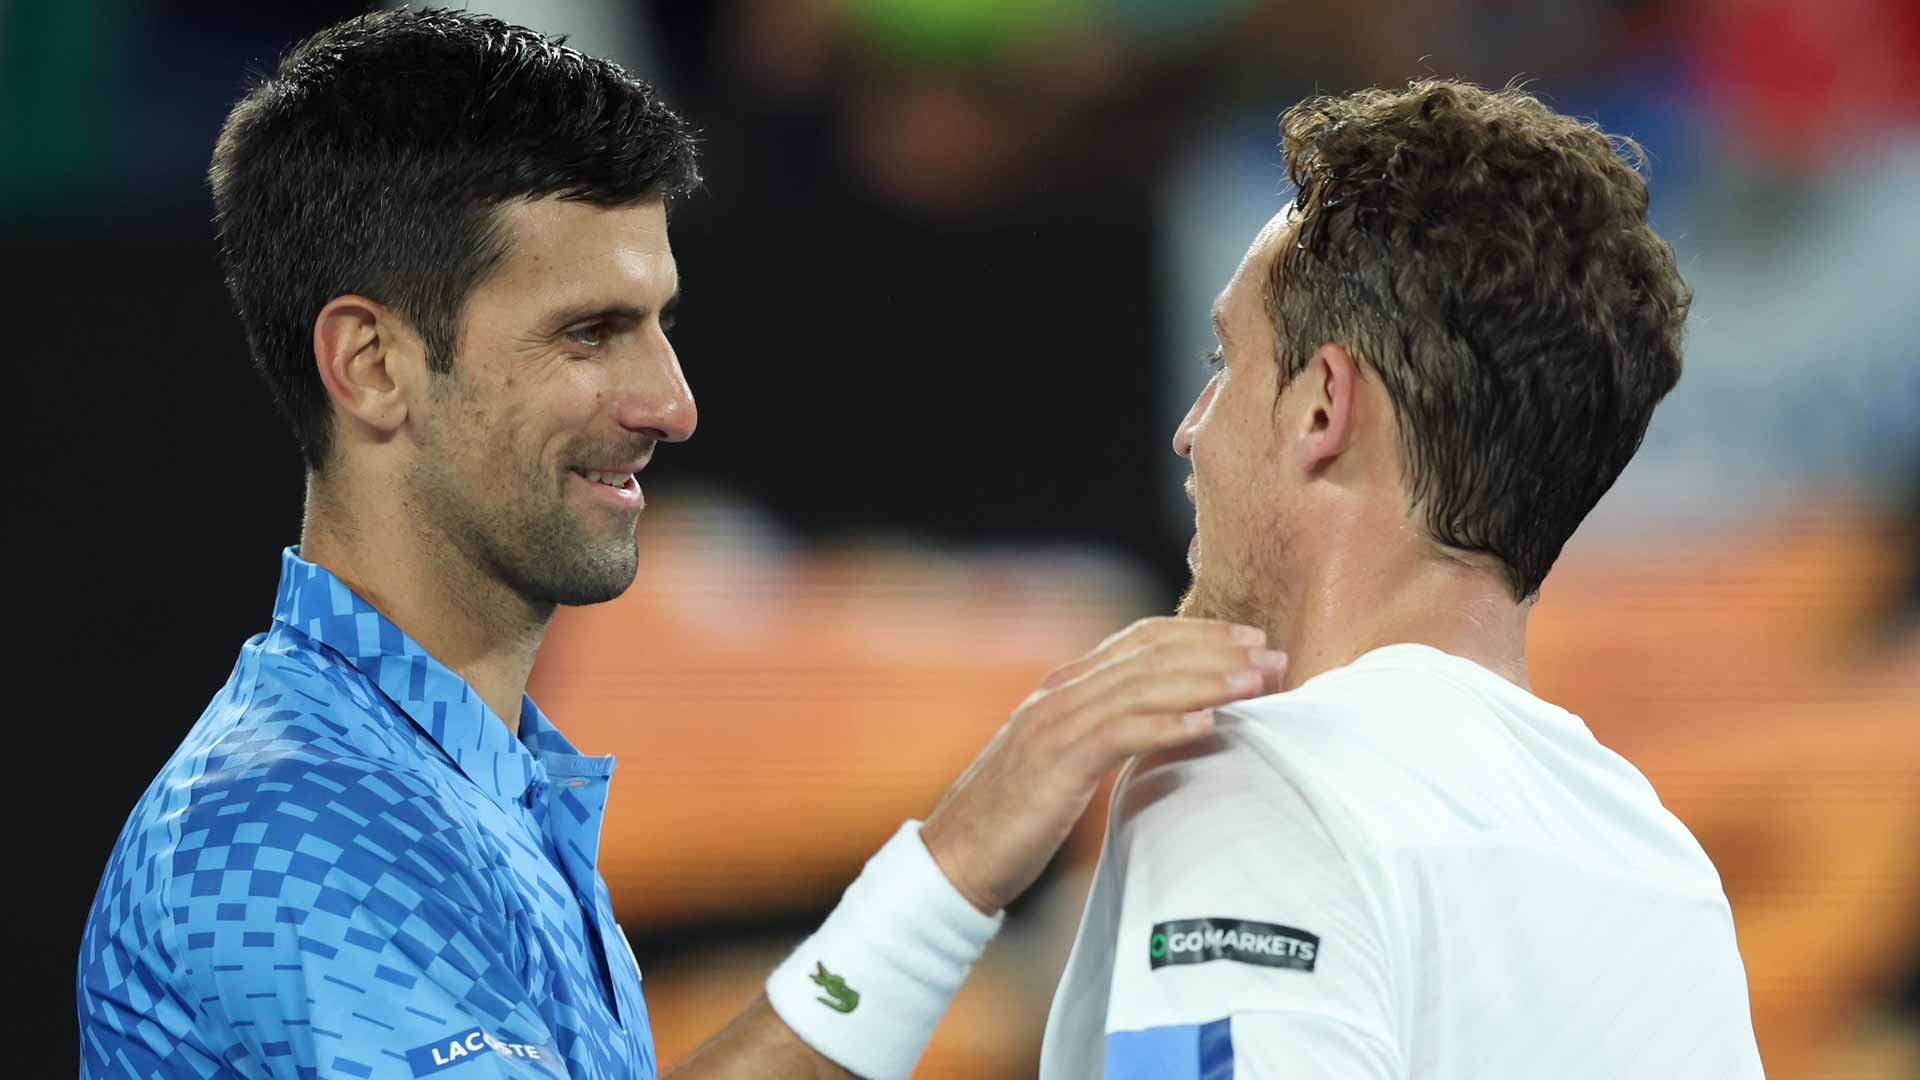 Novak Djokovic leads Roberto Carballes Baena 2-0 in their Lexus ATP Head2Head series.